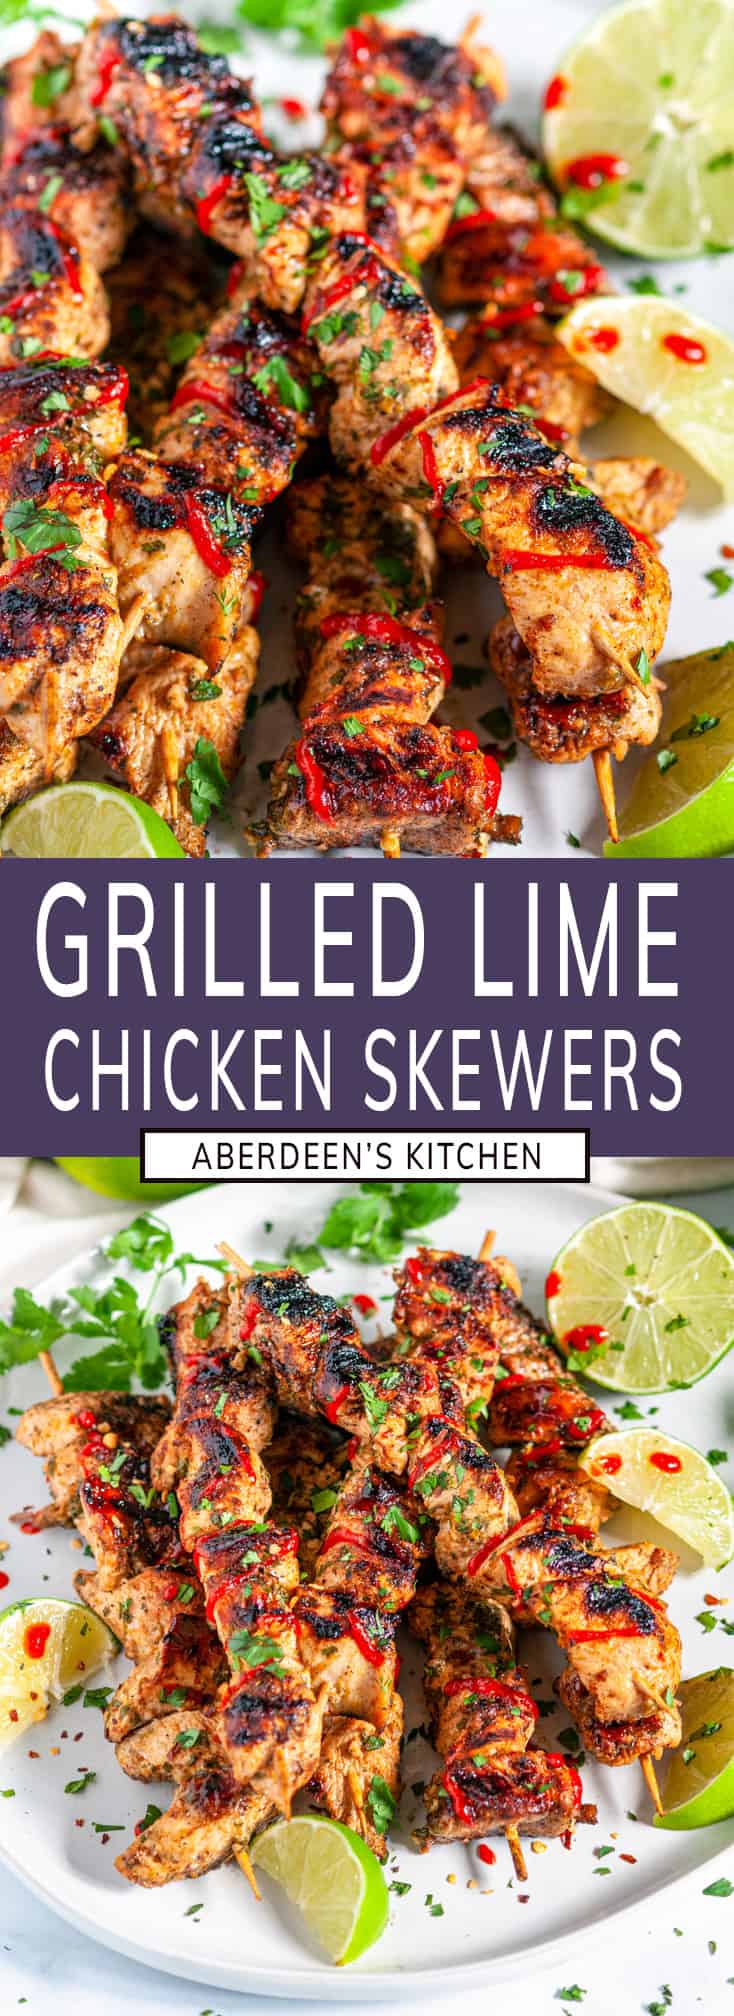 Grilled Lime Chicken Skewers - Aberdeen's Kitchen